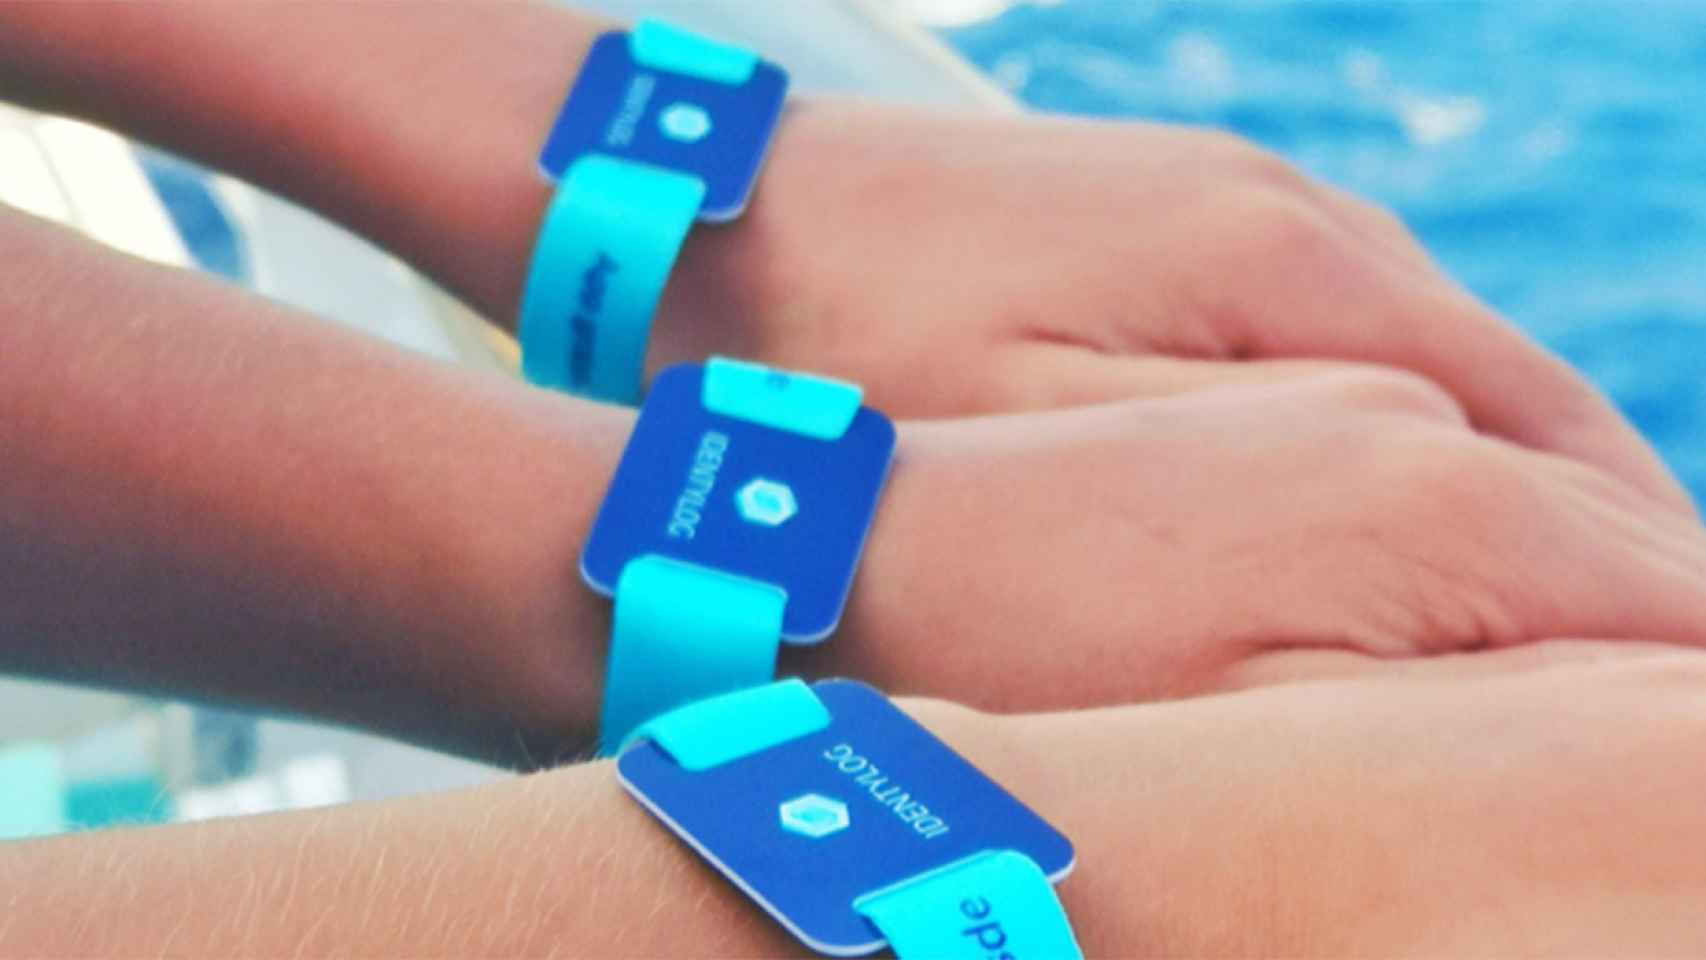 Una startup española lanza una pulsera de identificación personal con tecnología NFC